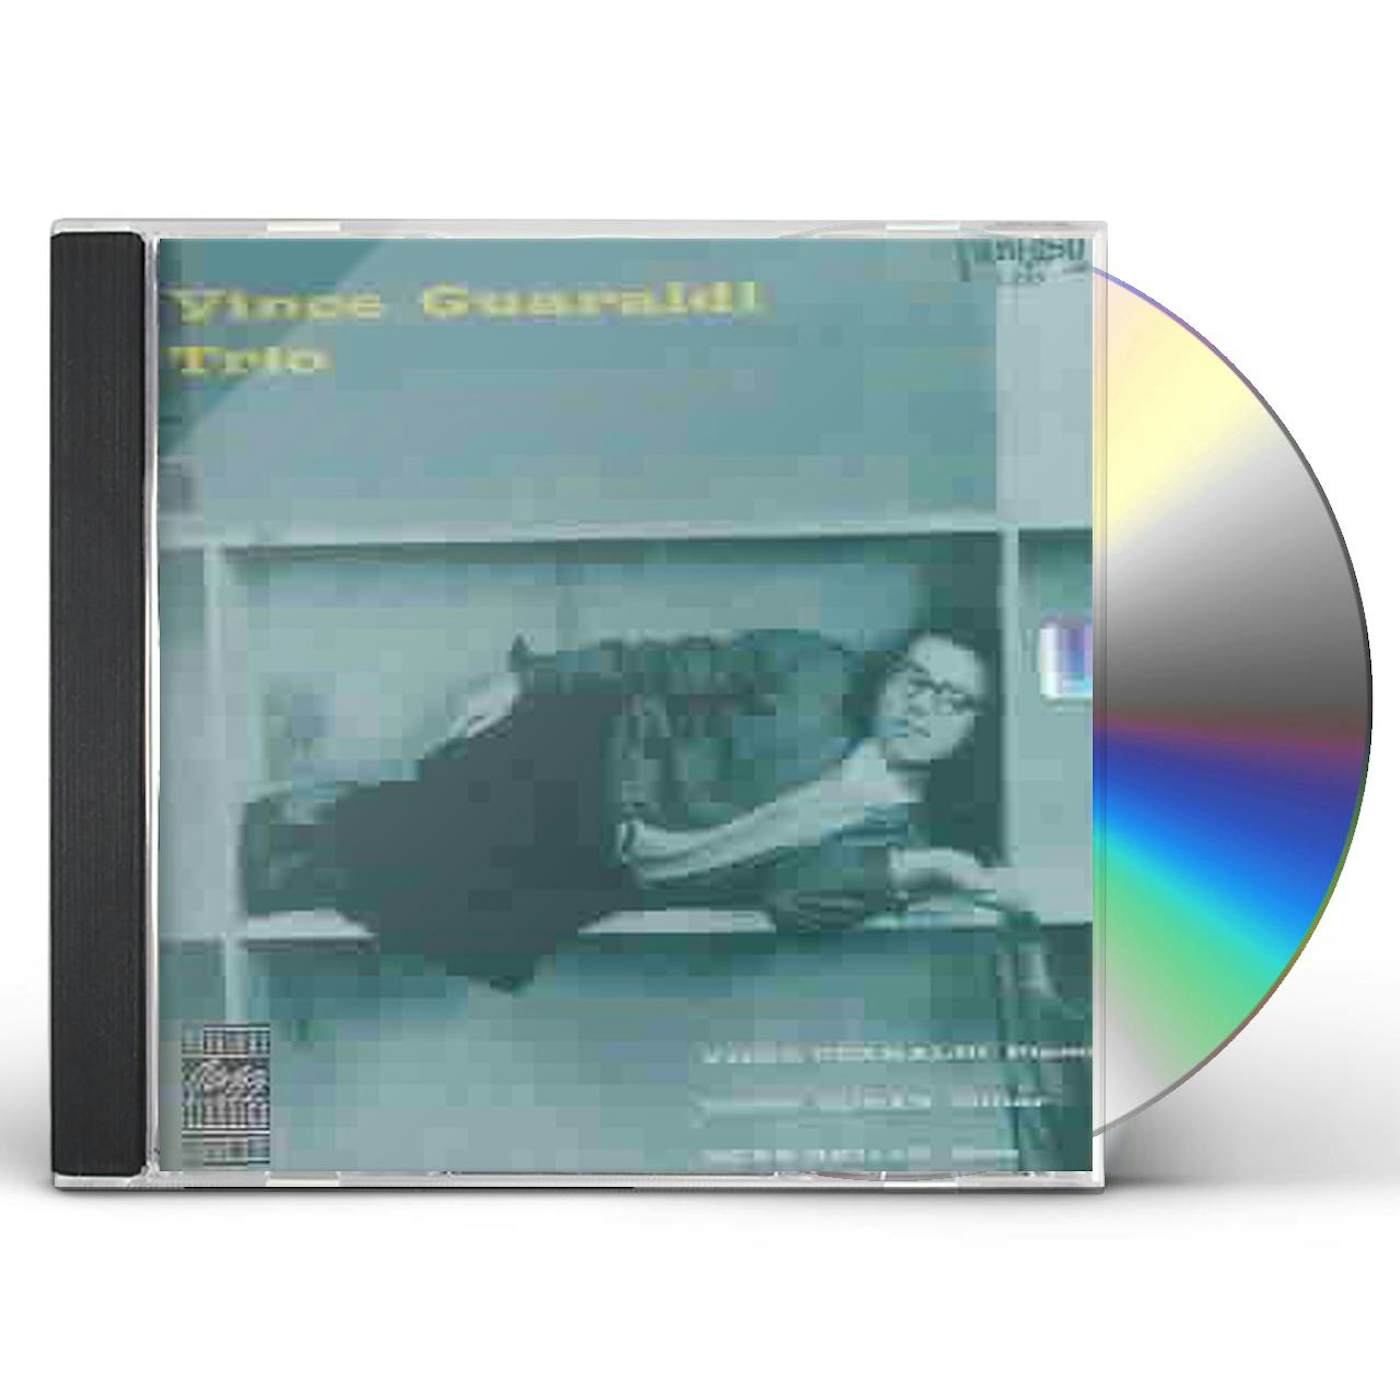 VINCE GUARALDI TRIO CD